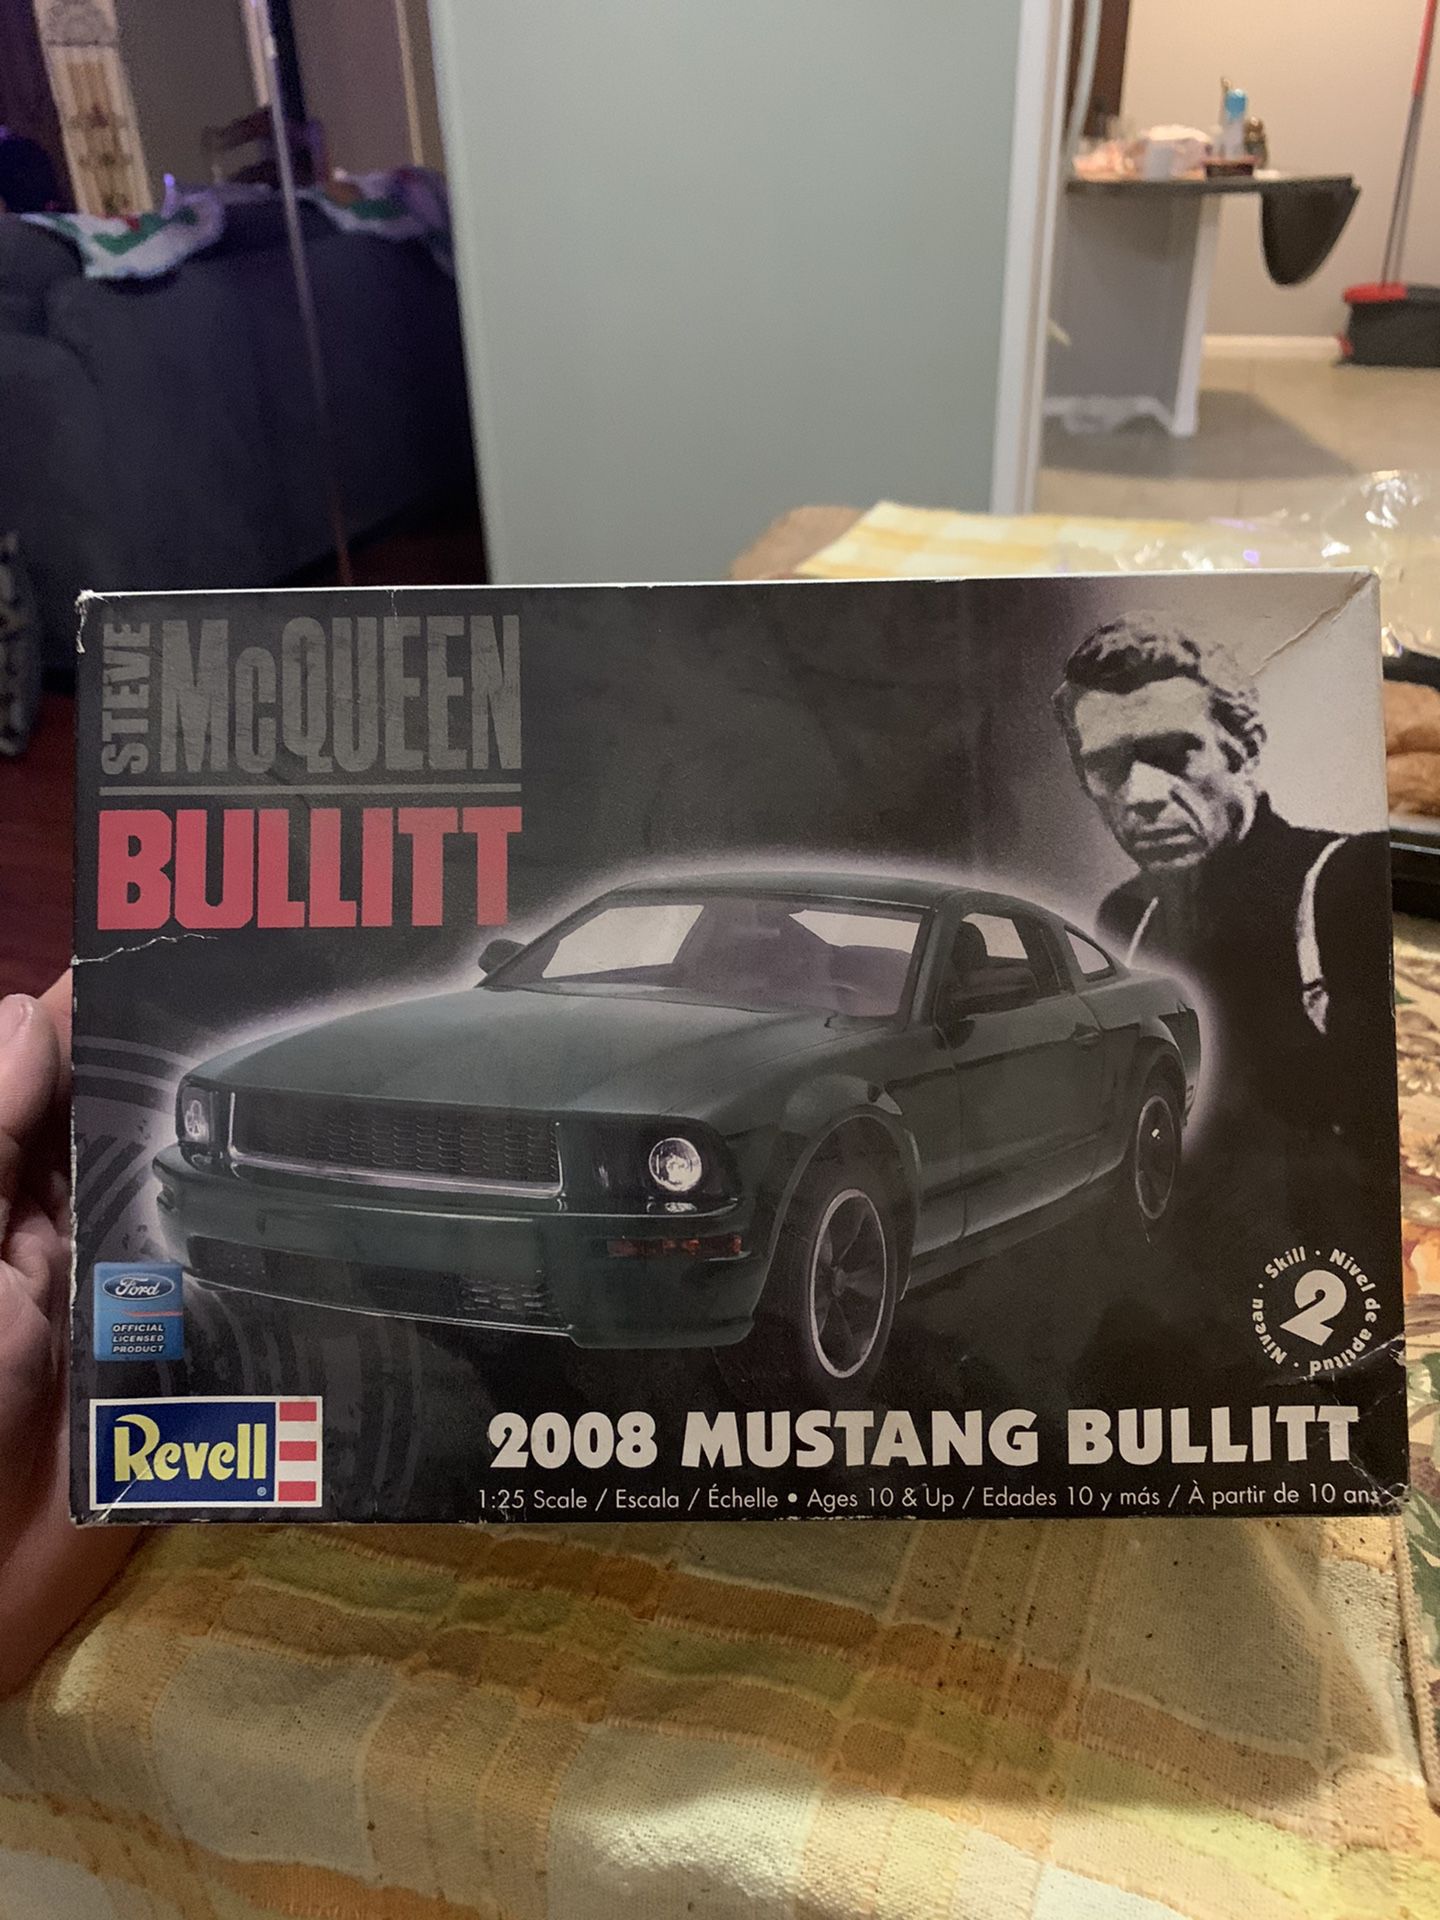 2008 Mustang Bullitt Model Car